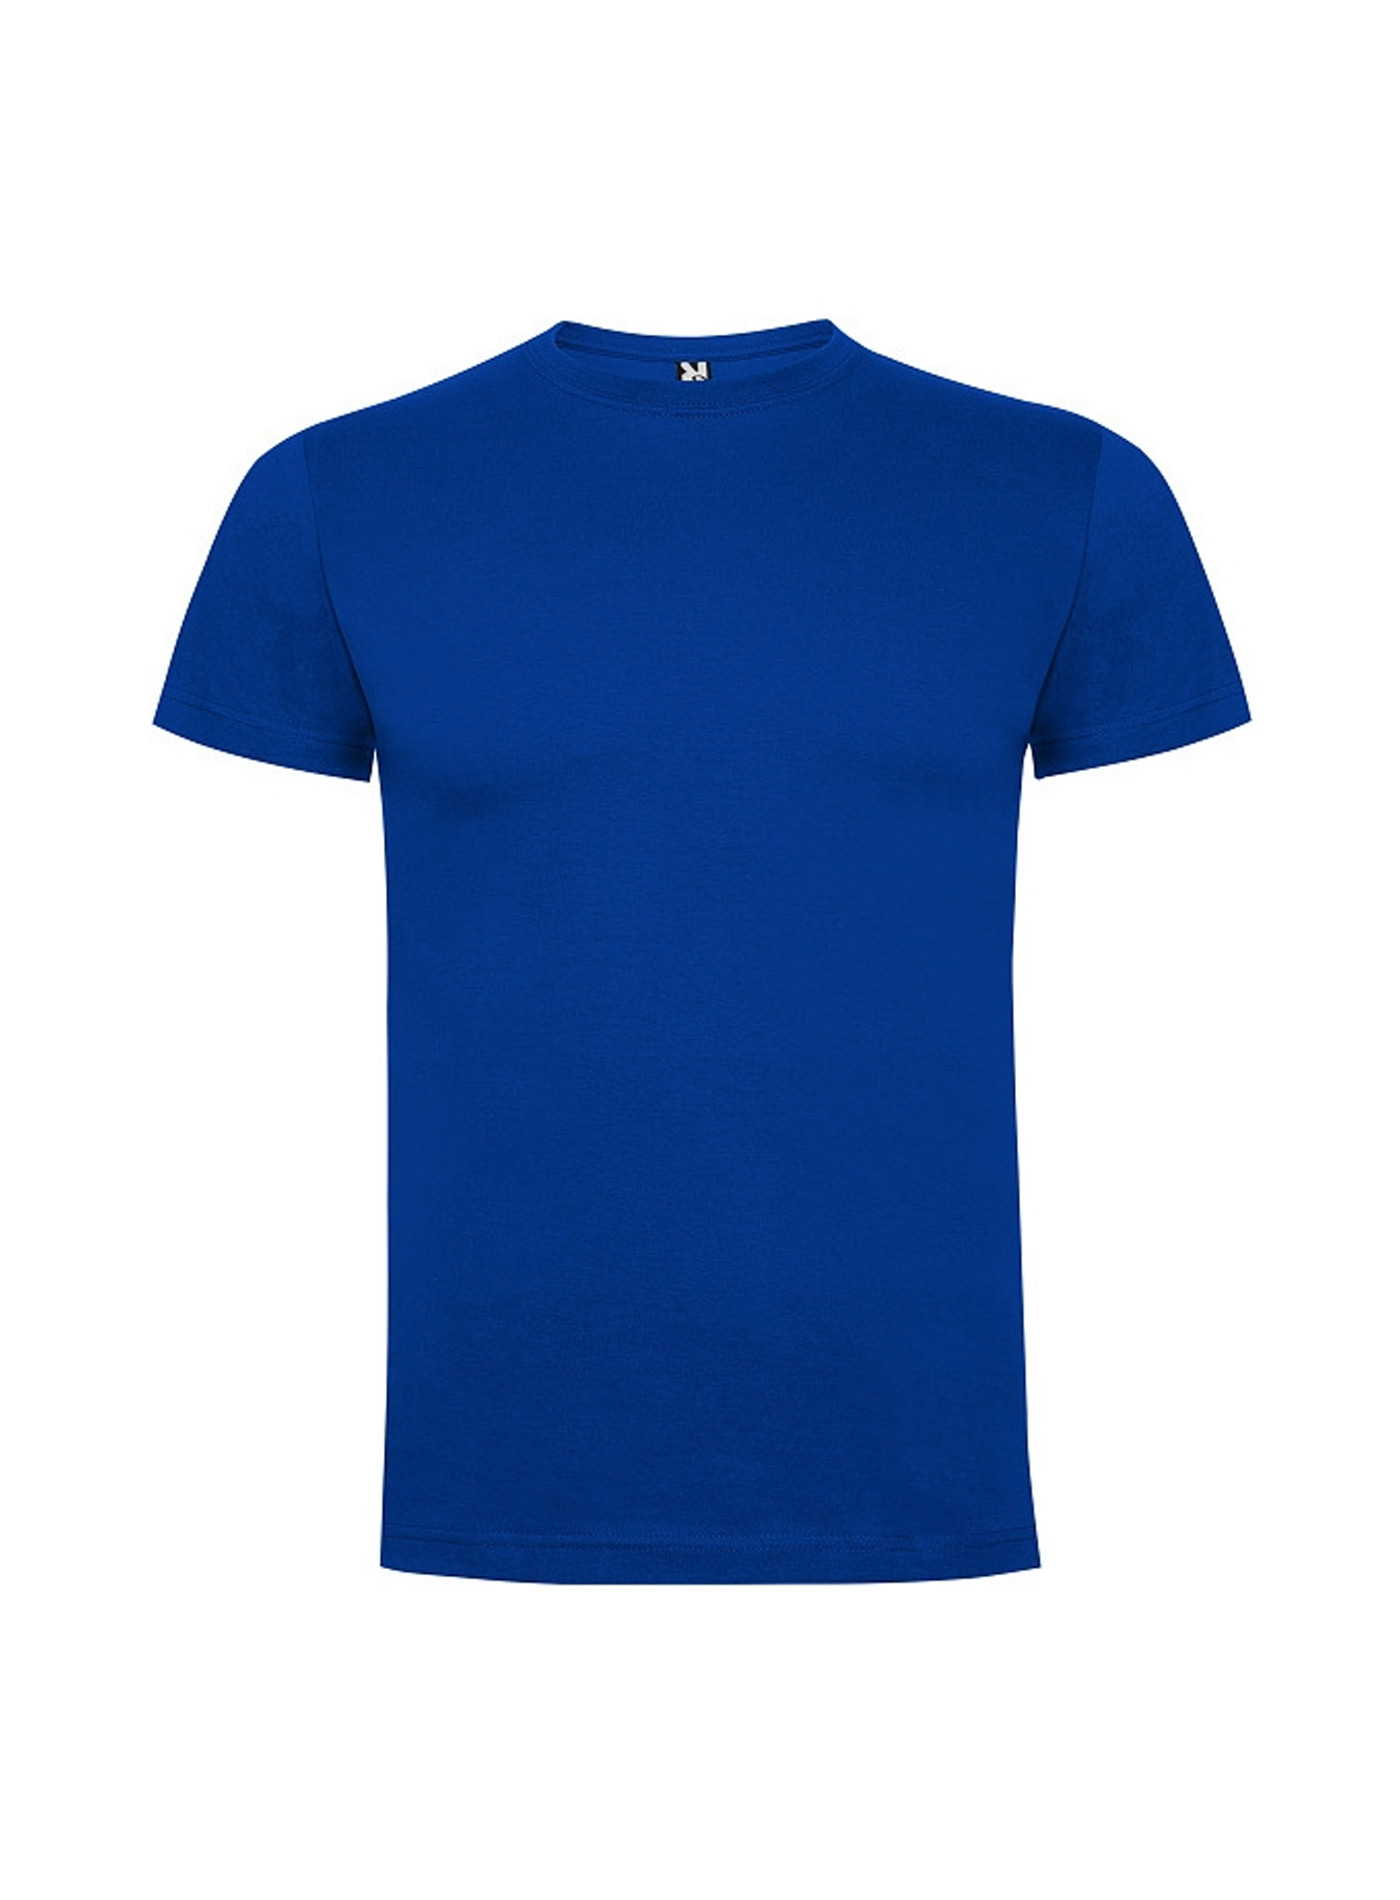 Dětské tričko Roly Dogo premium - Královská modrá 5-6